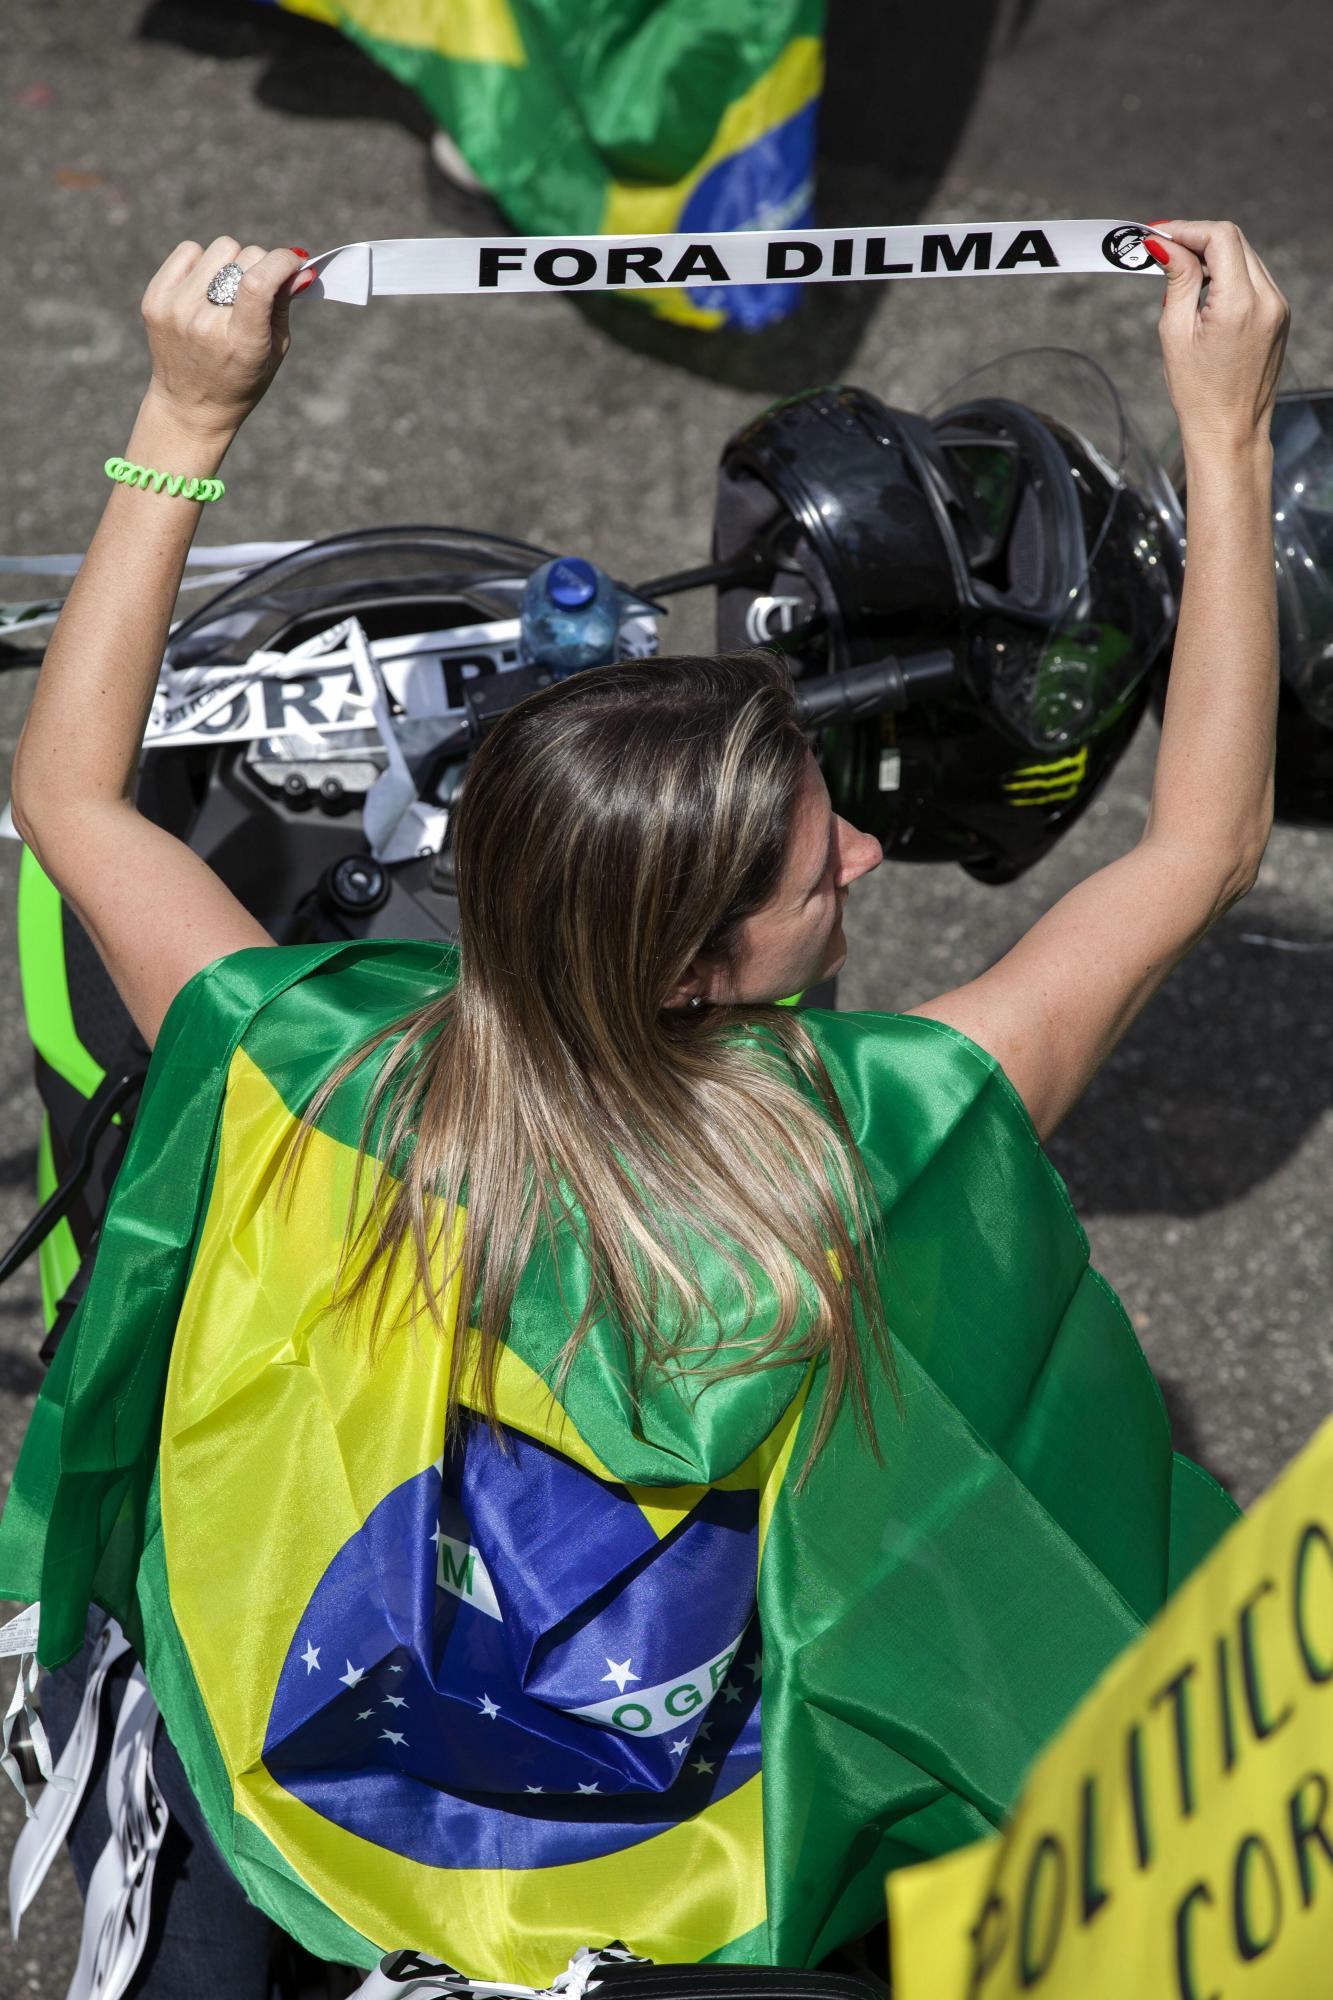 Un manifestante participa en una protesta contra el Gobierno de Dilma Rousseff hoy, domingo 16 de agosto de 2015, en la ciudad de Sao Paulo (Brasil). Miles de personas se concentraron en decenas de ciudades de Brasil para manifestaciones convocadas por la oposición, que pretende dar una prueba de fuerza y protestar por la corrupción y la gestión económica del Gobierno de Dilma Rousseff.